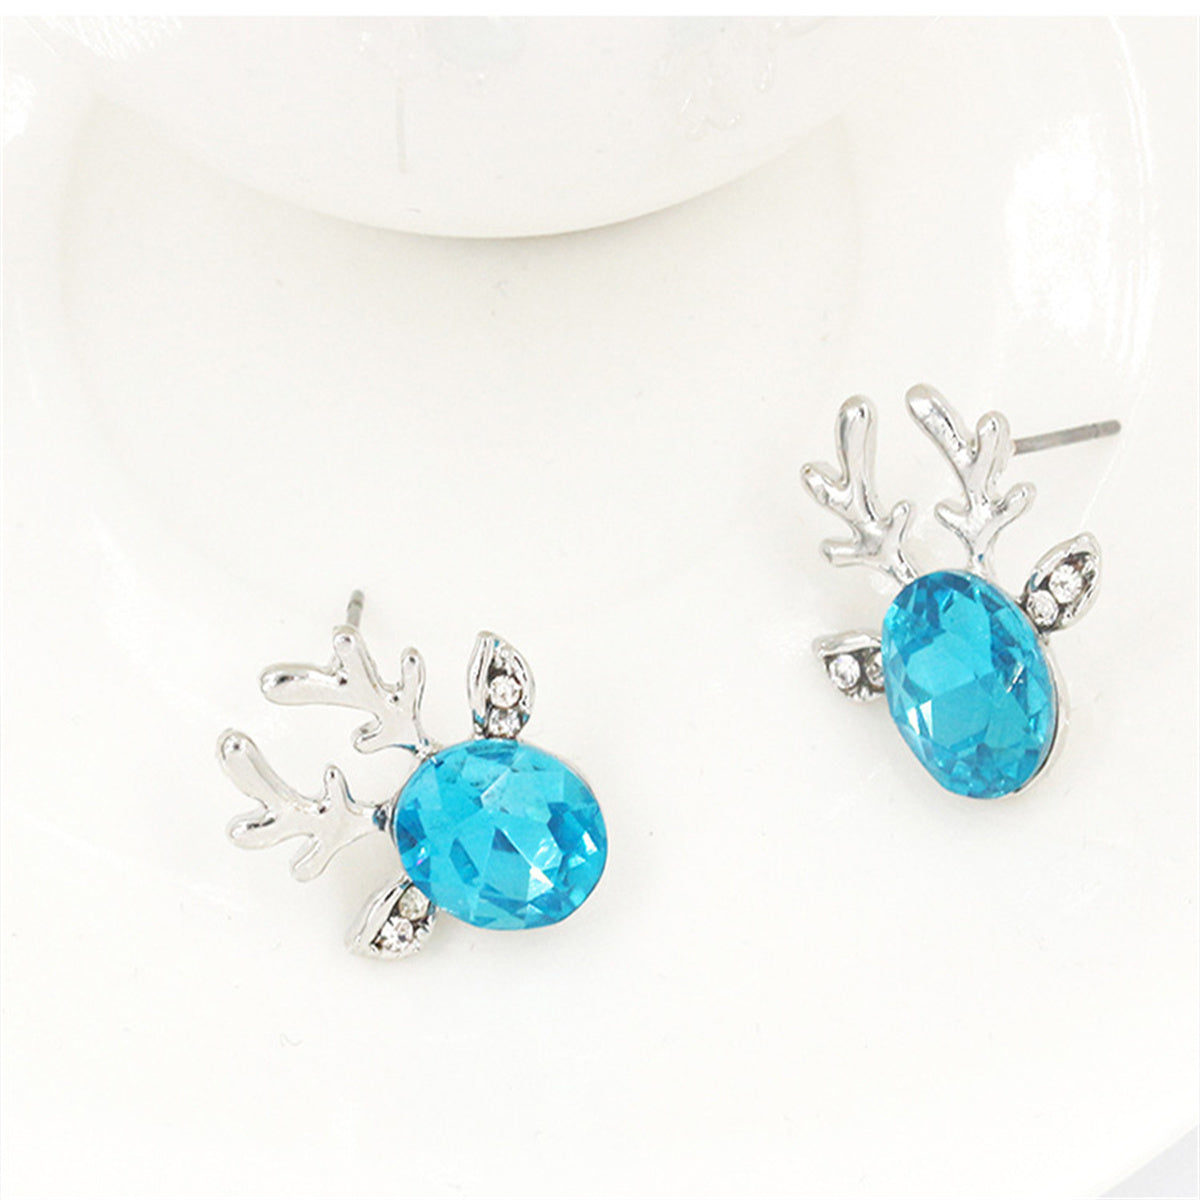 Blue Crystal & Silver-Plated Reindeer Stud Earring